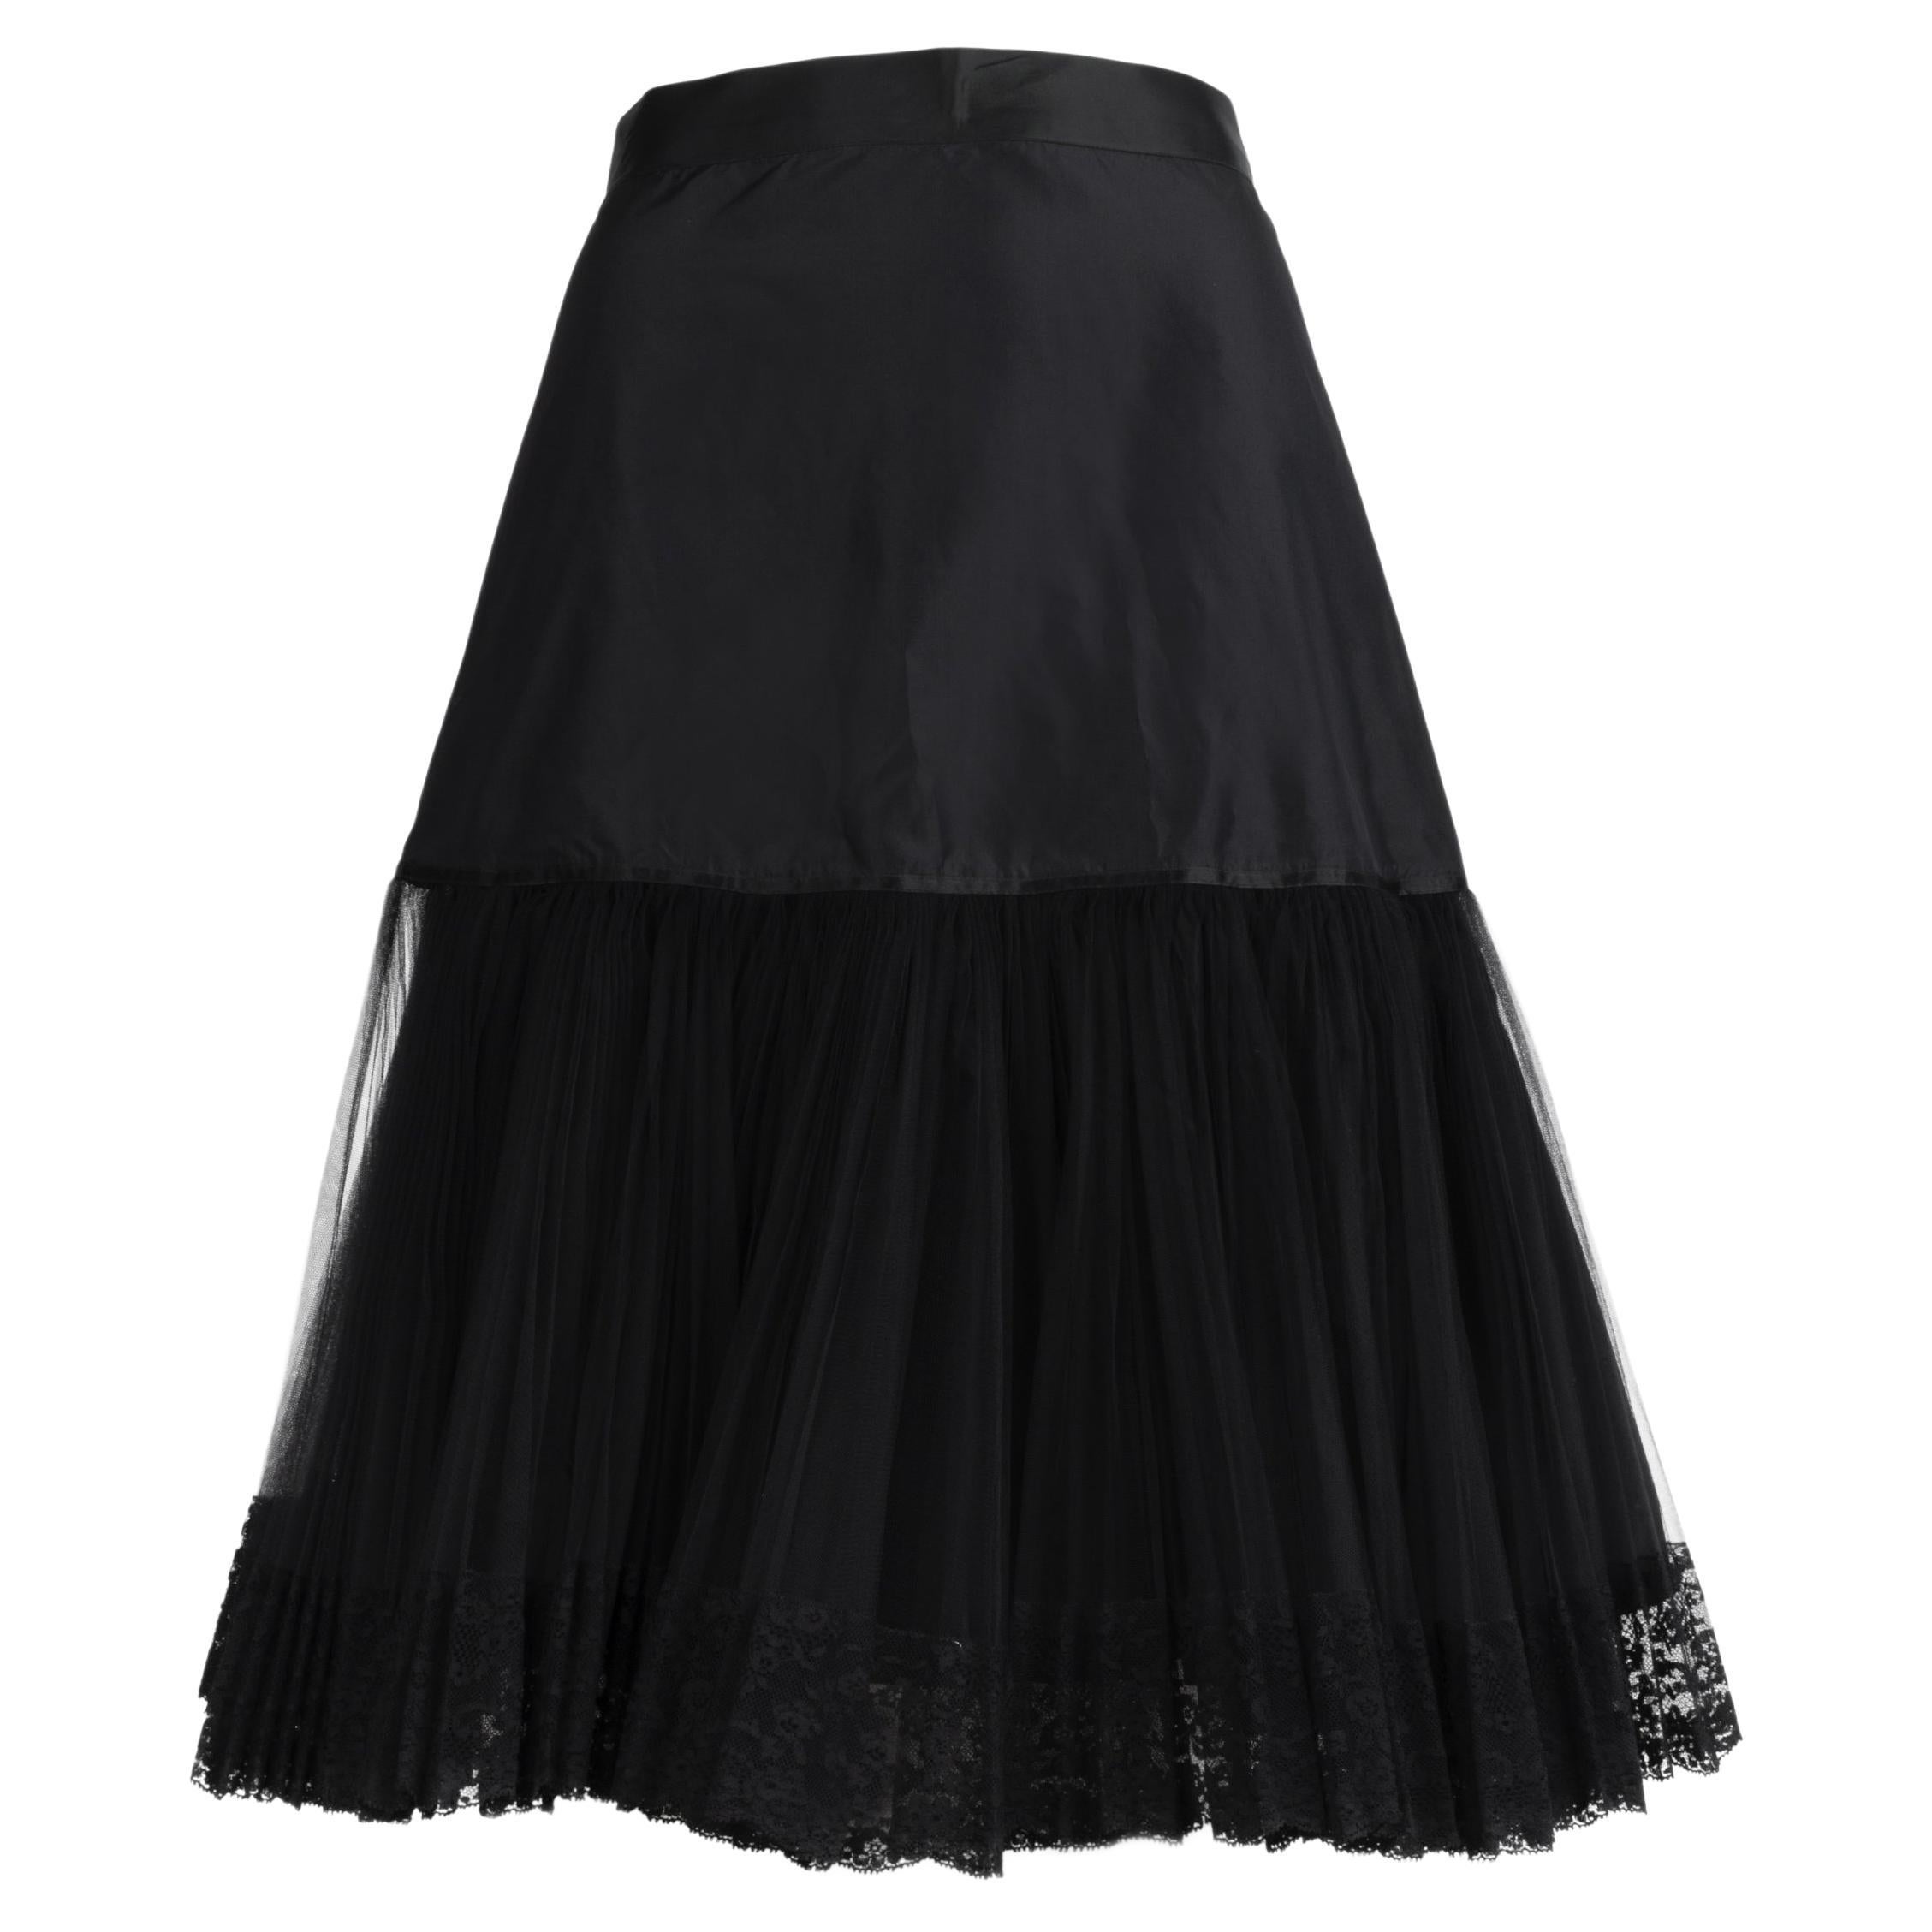  
Gianfranco Ferre Long Skirt  For Sale